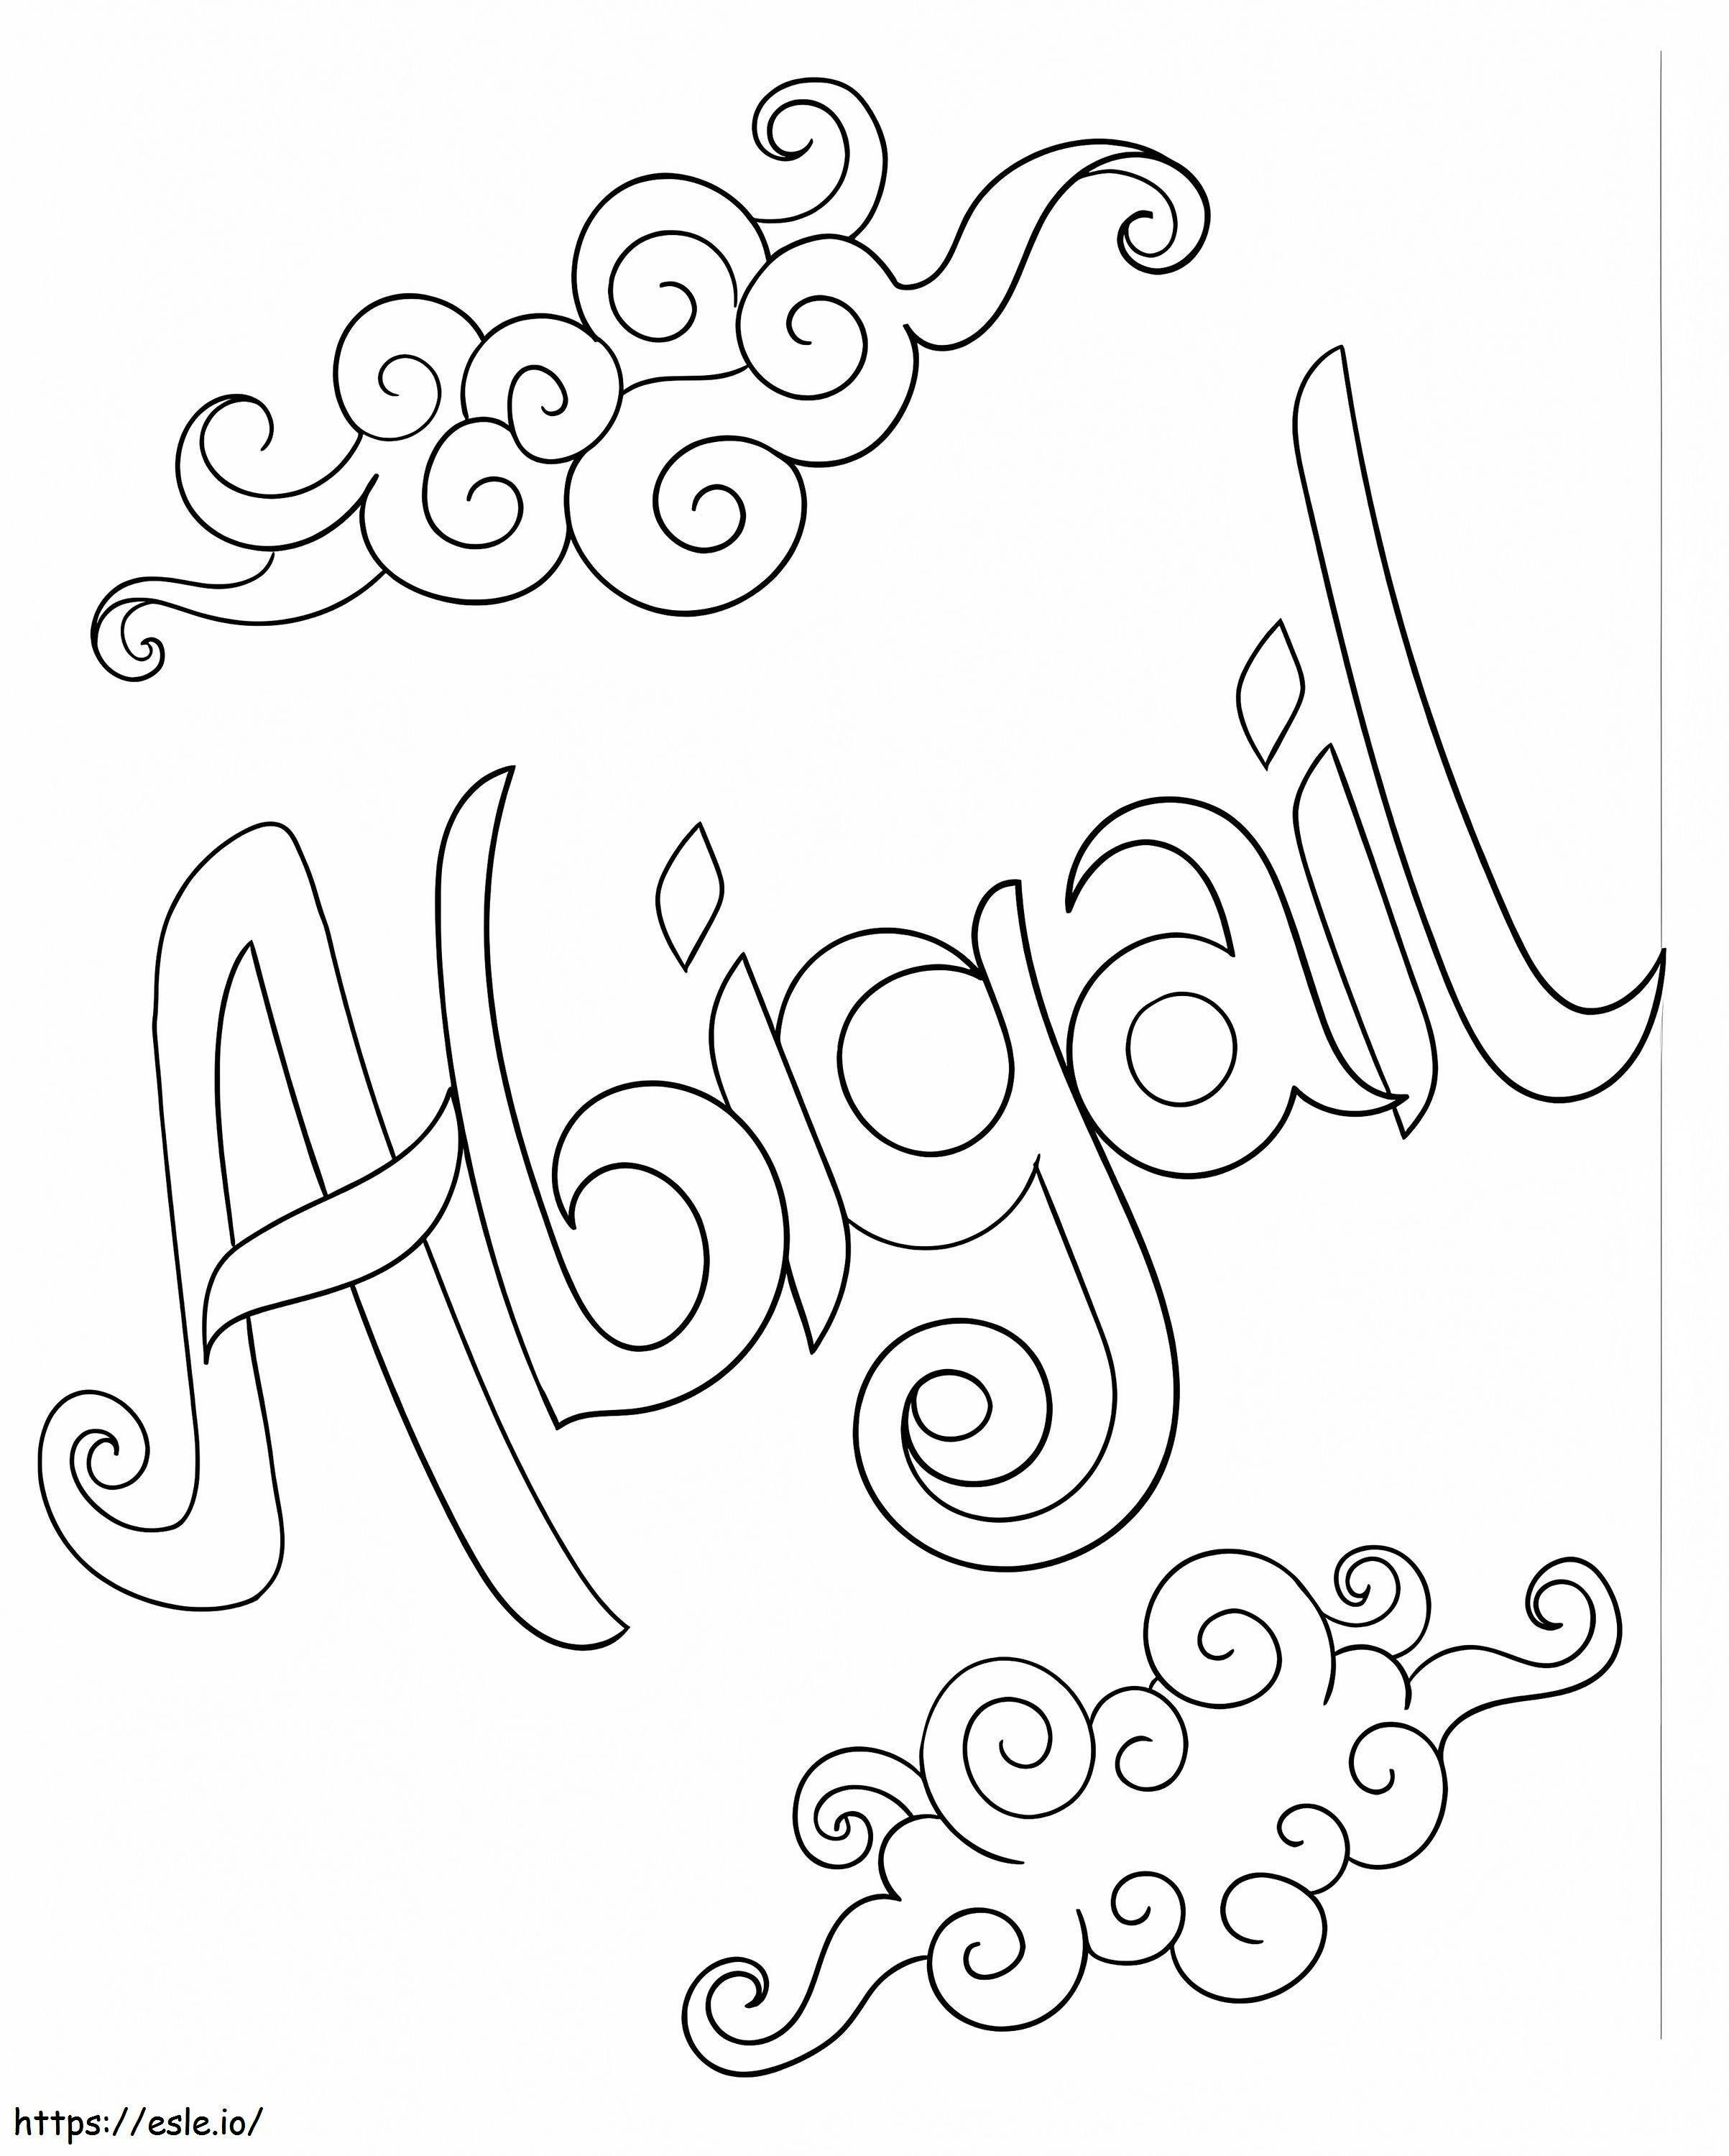 Abigail para impressão para colorir